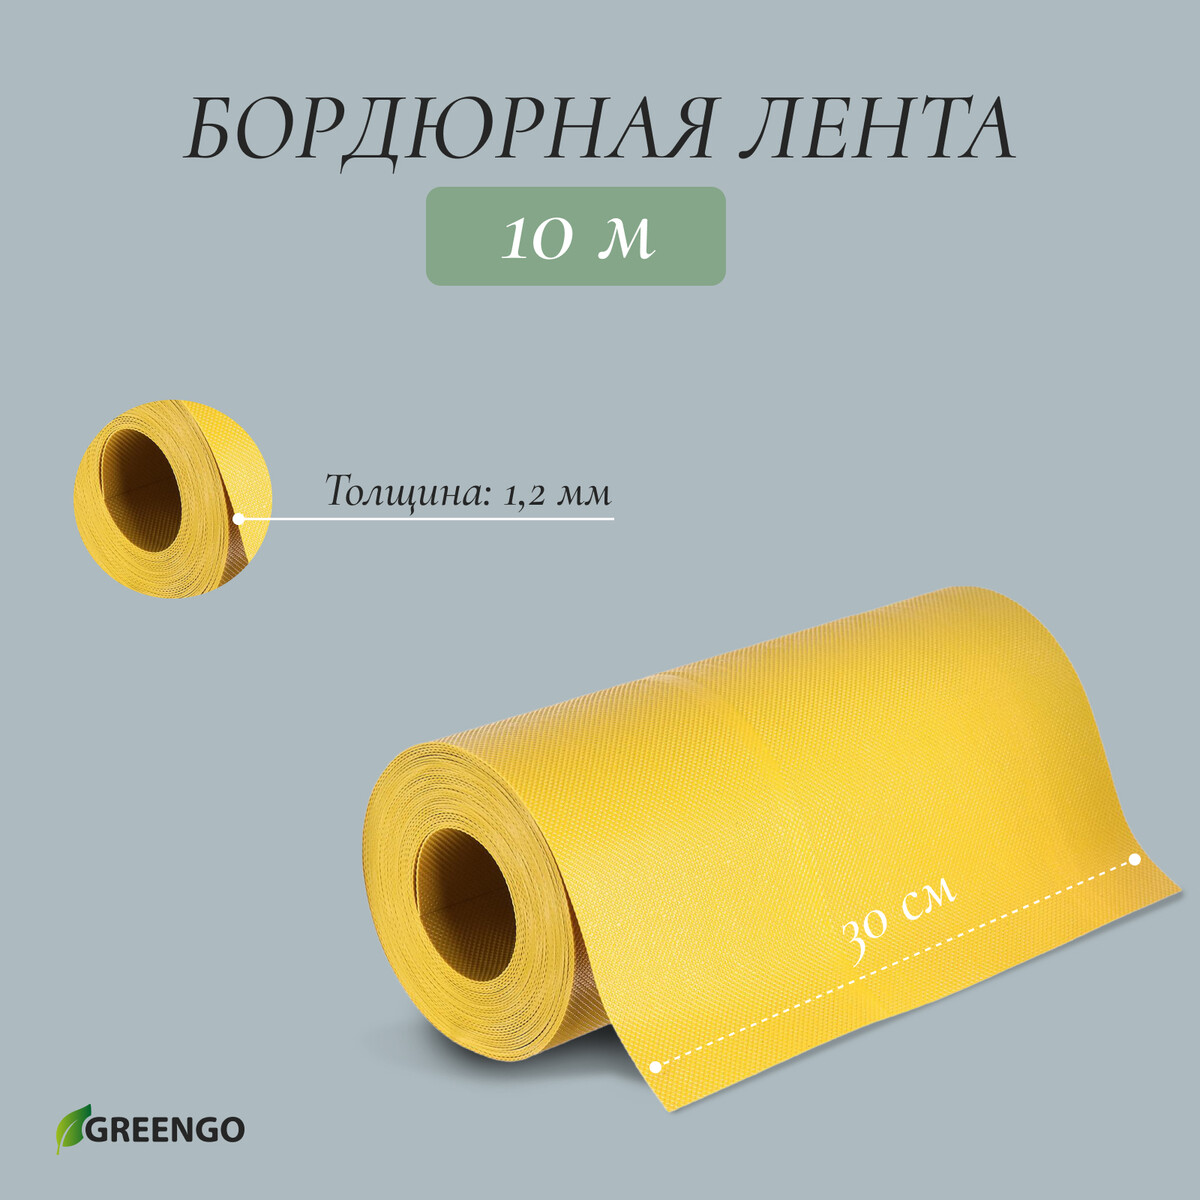 Лента бордюрная, 0.3 × 10 м, толщина 1.2 мм, пластиковая, желтая, greengo лента бордюрная 0 2 × 10 м толщина 1 2 мм пластиковая зеленая greengo